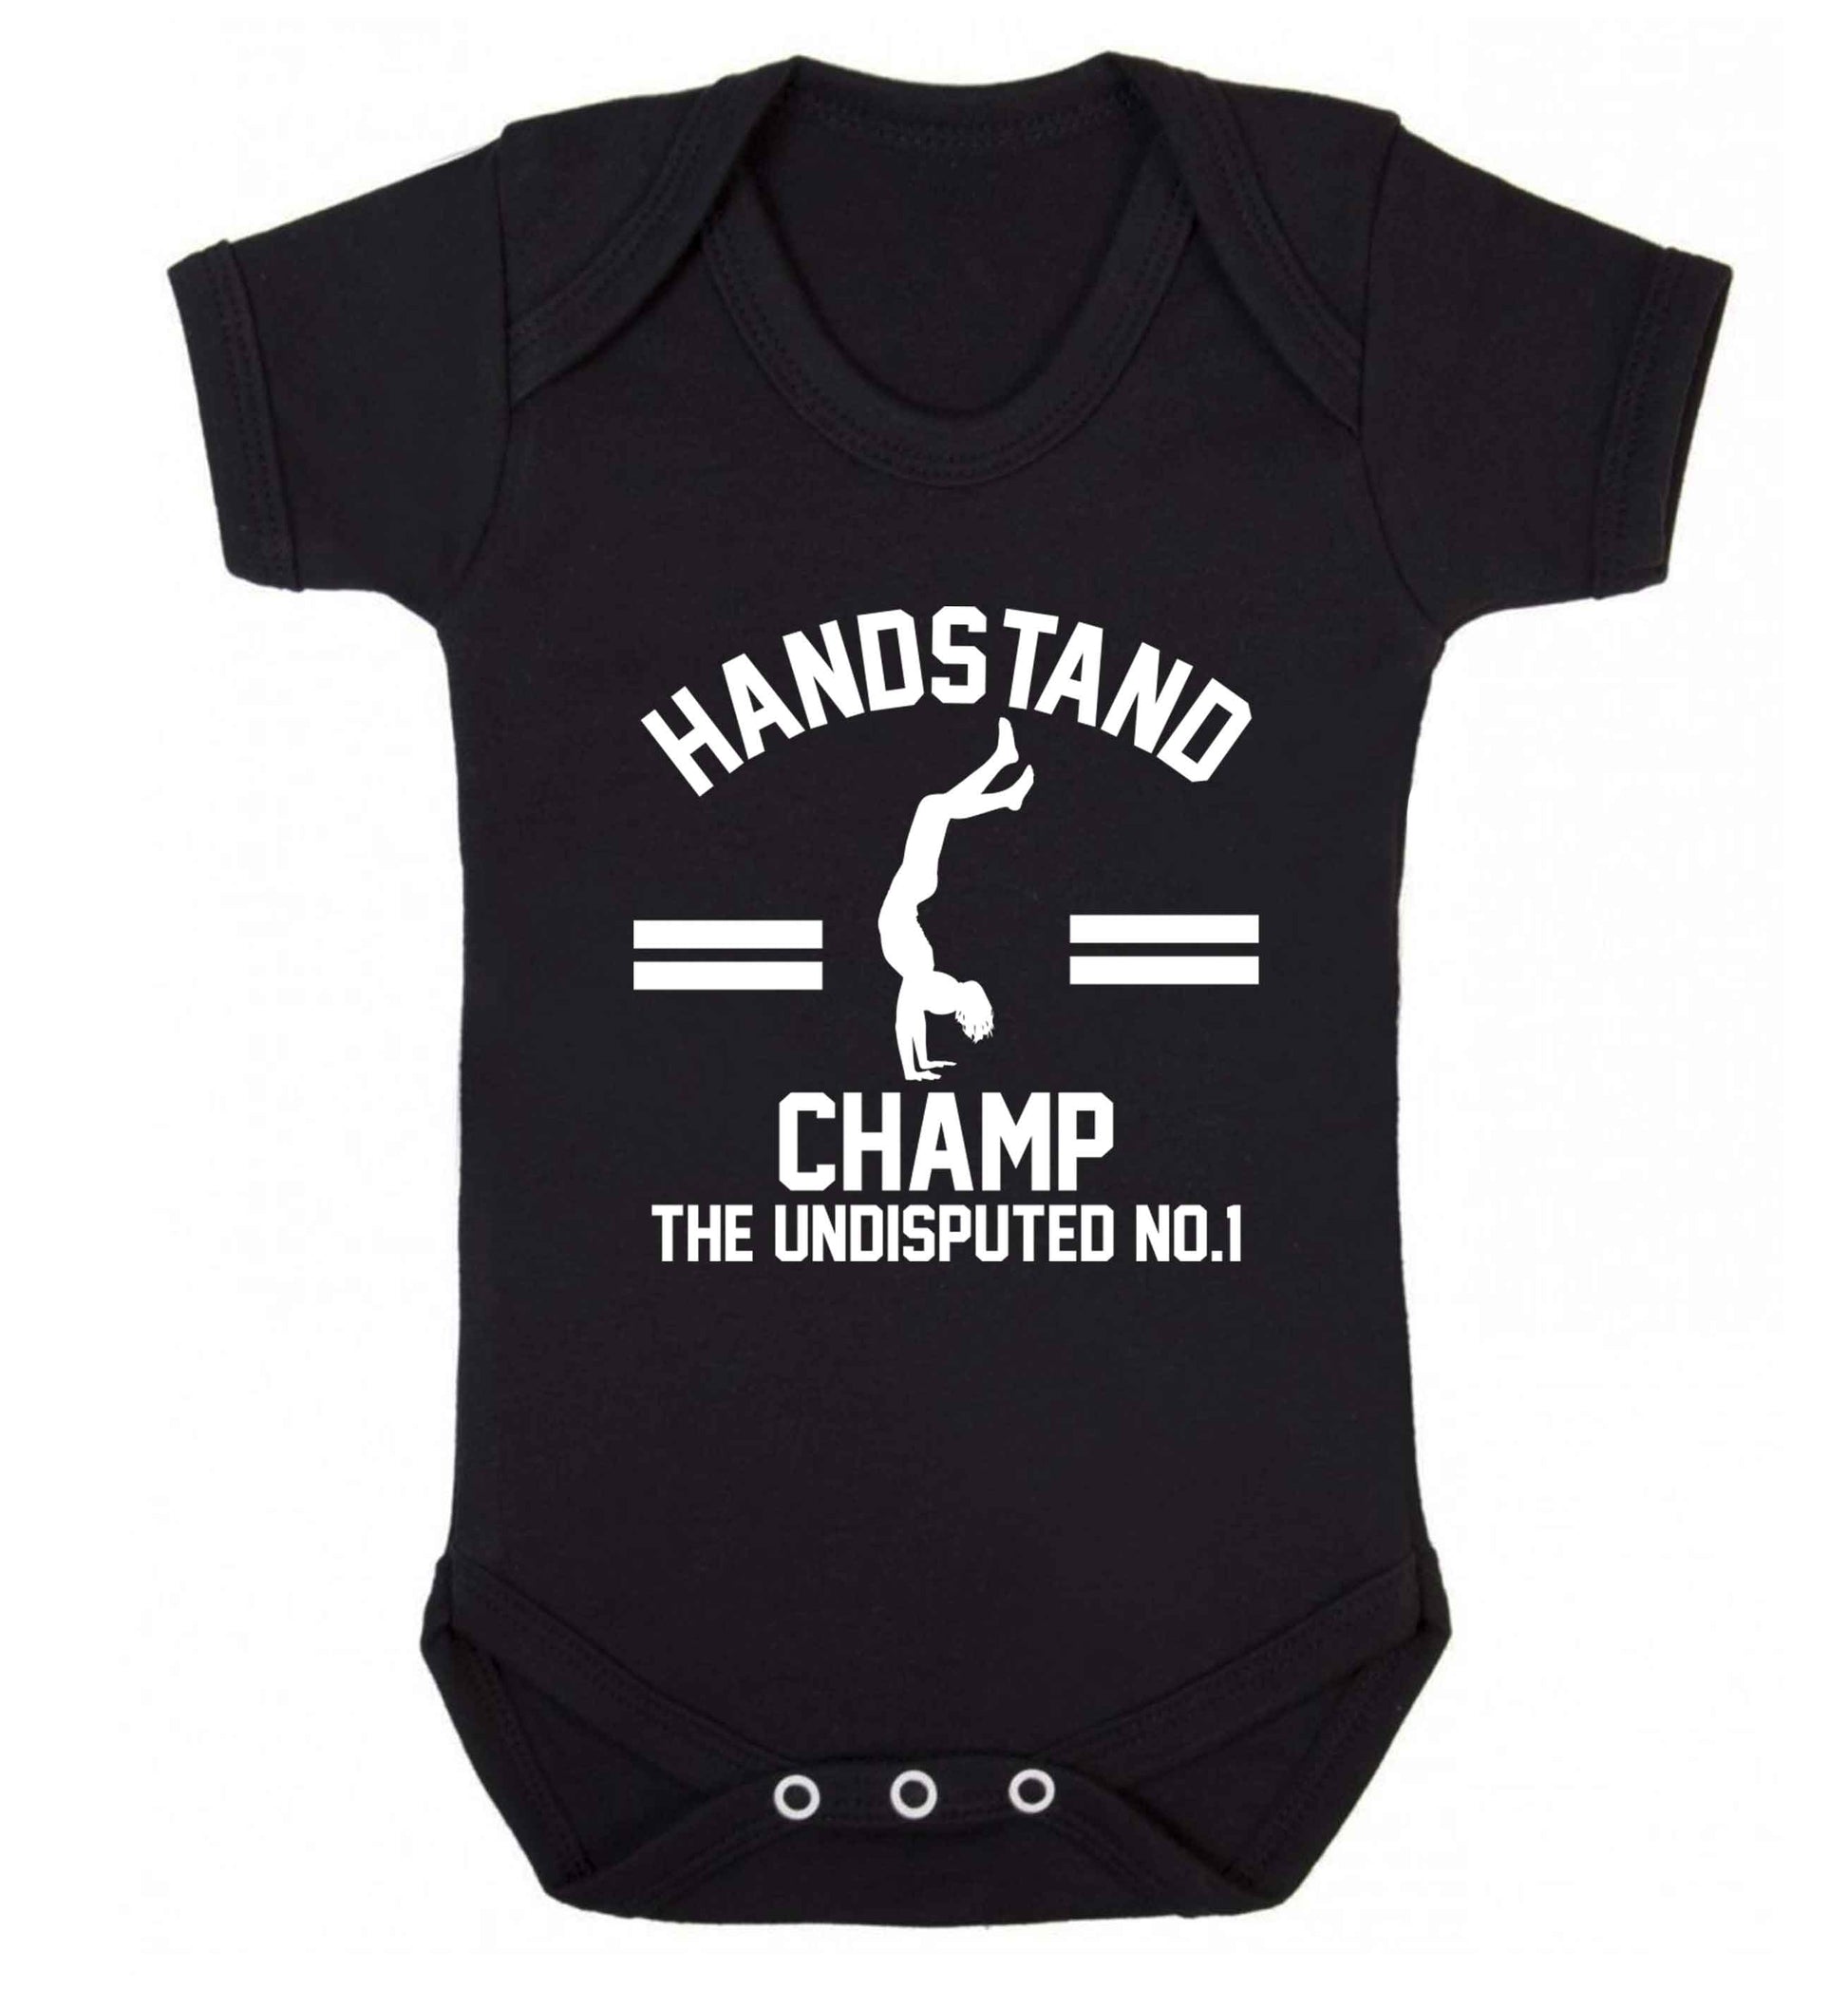 Undisputed handstand championship no.1  Baby Vest black 18-24 months